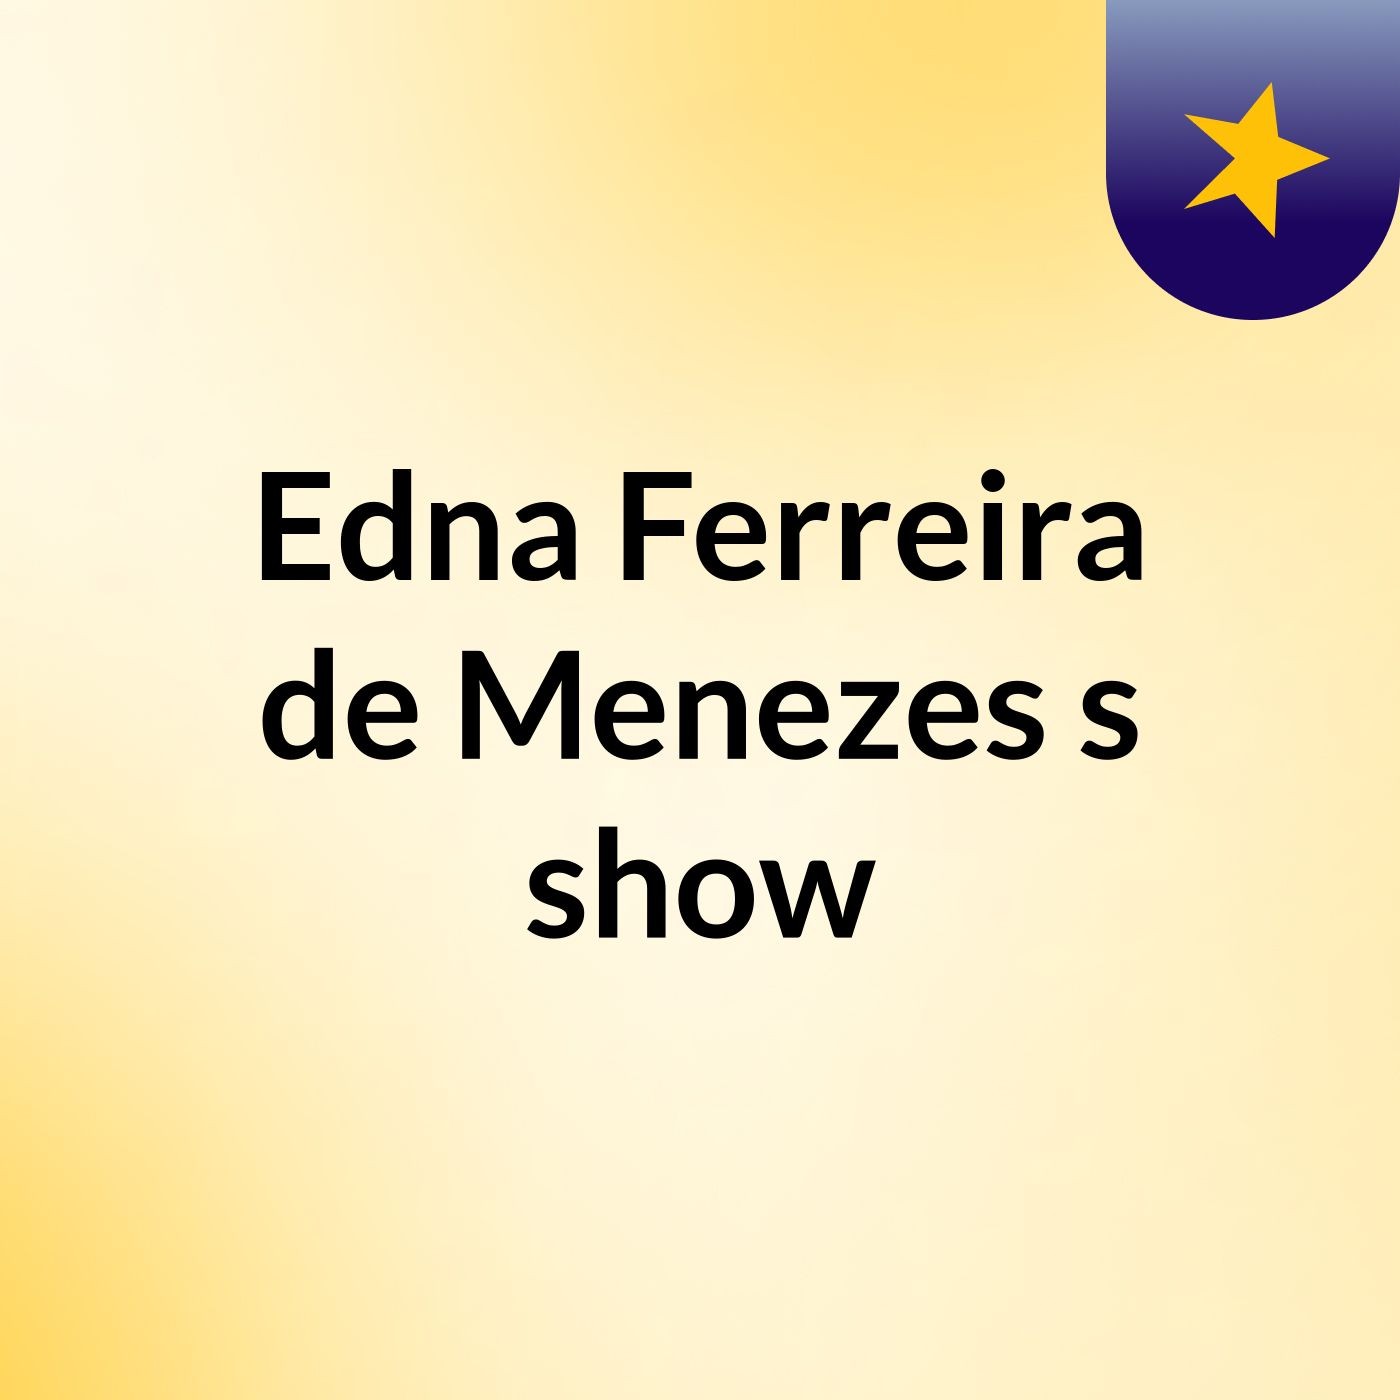 Edna Ferreira de Menezes's show